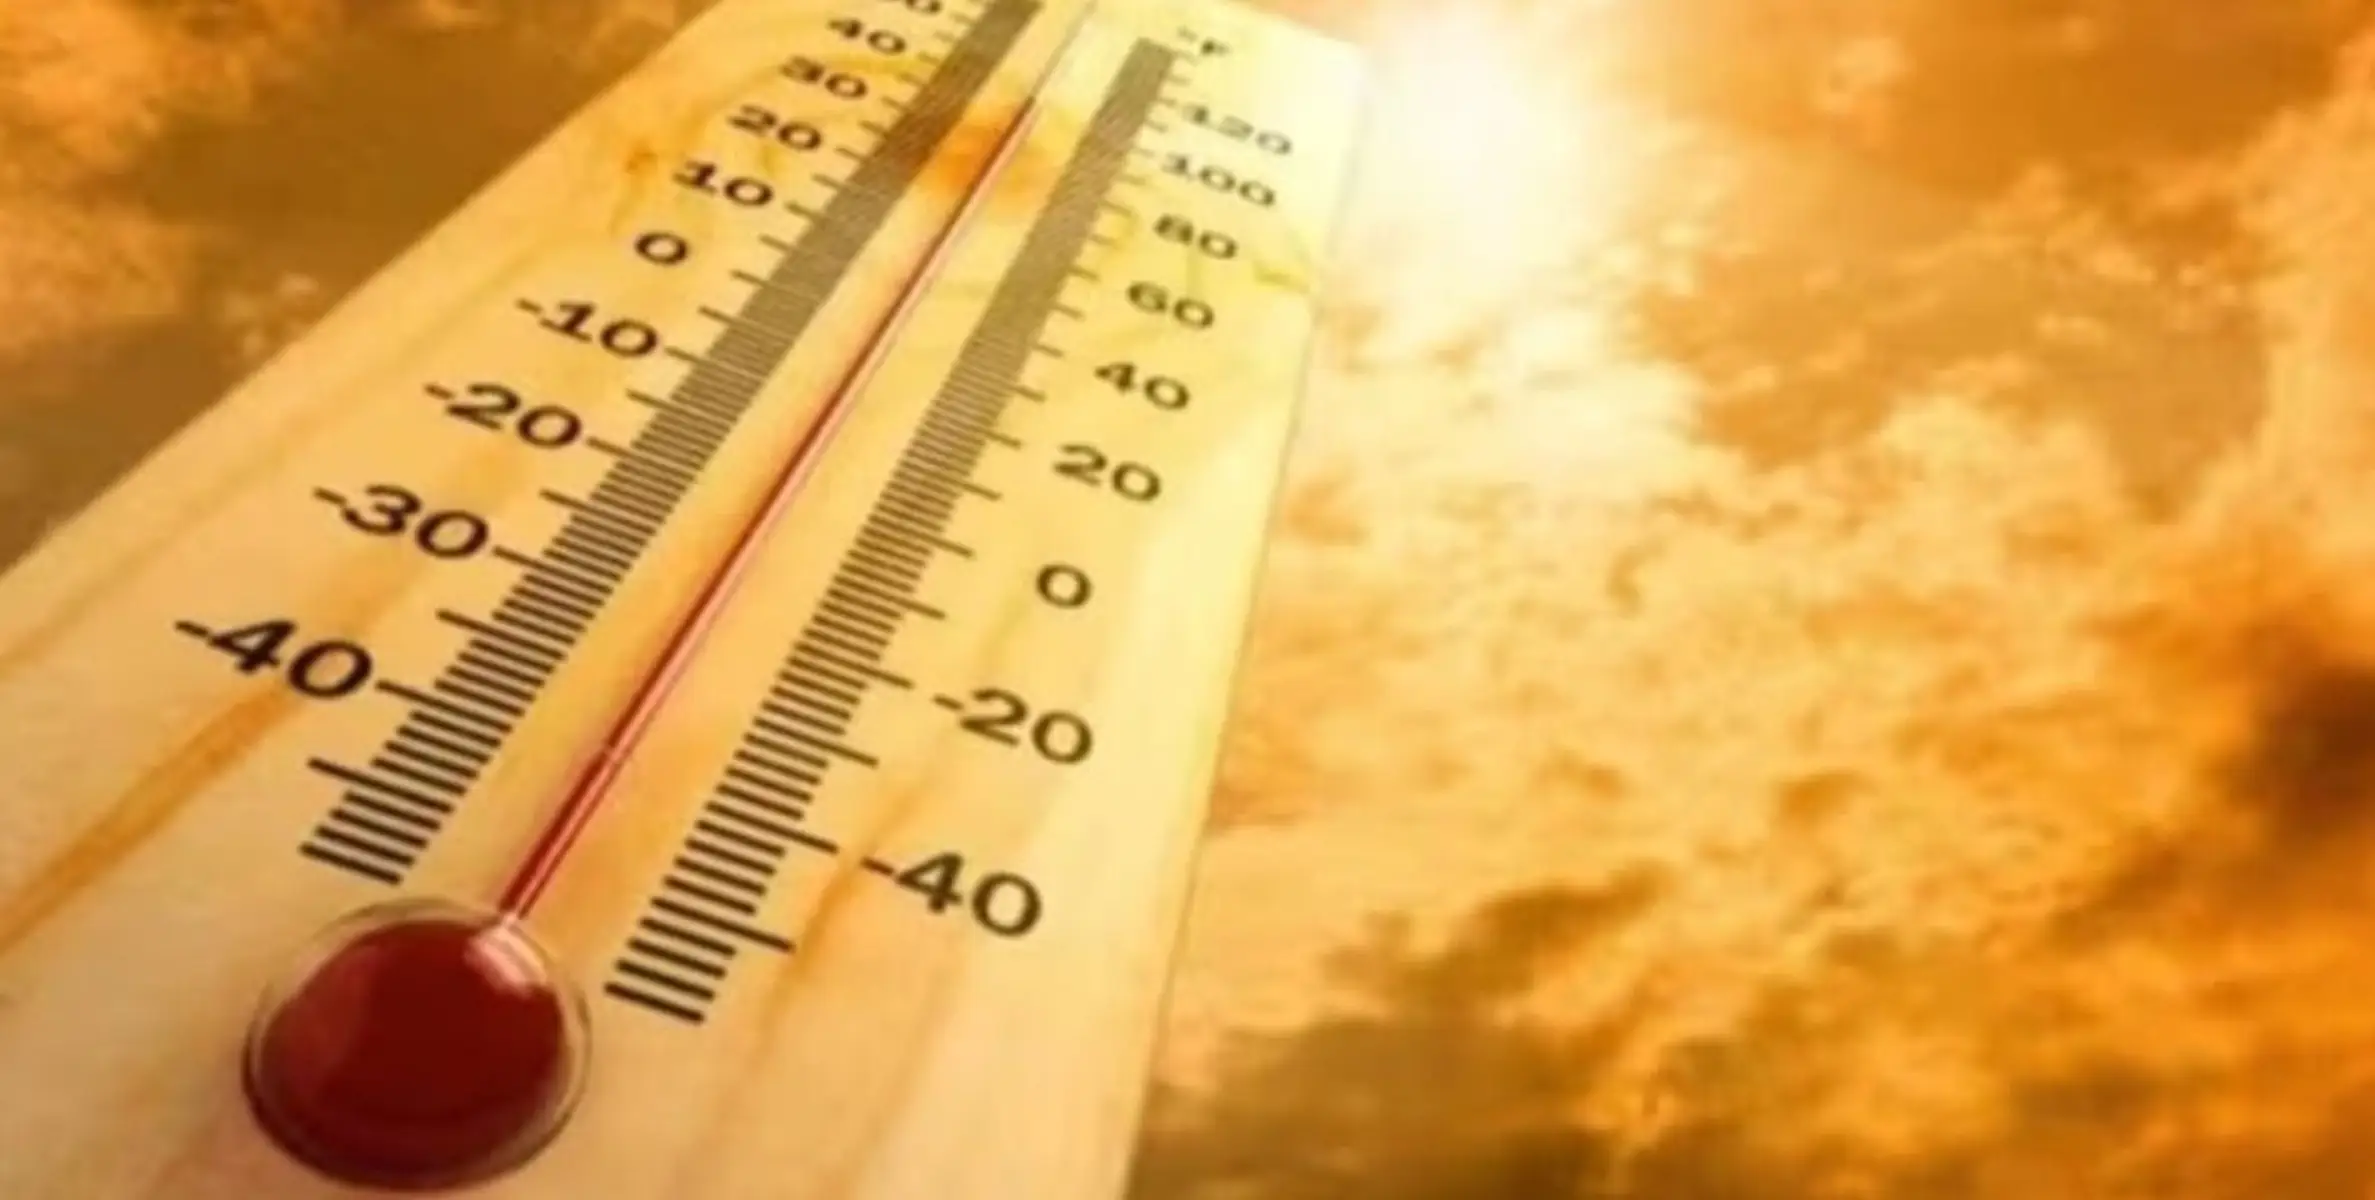 #heatwave | സൗദിയിൽ ഉഷ്ണ തരംഗം; കിഴക്കൻ പ്രവിശ്യയിലെ താപനില 50 ഡിഗ്രിയിൽ